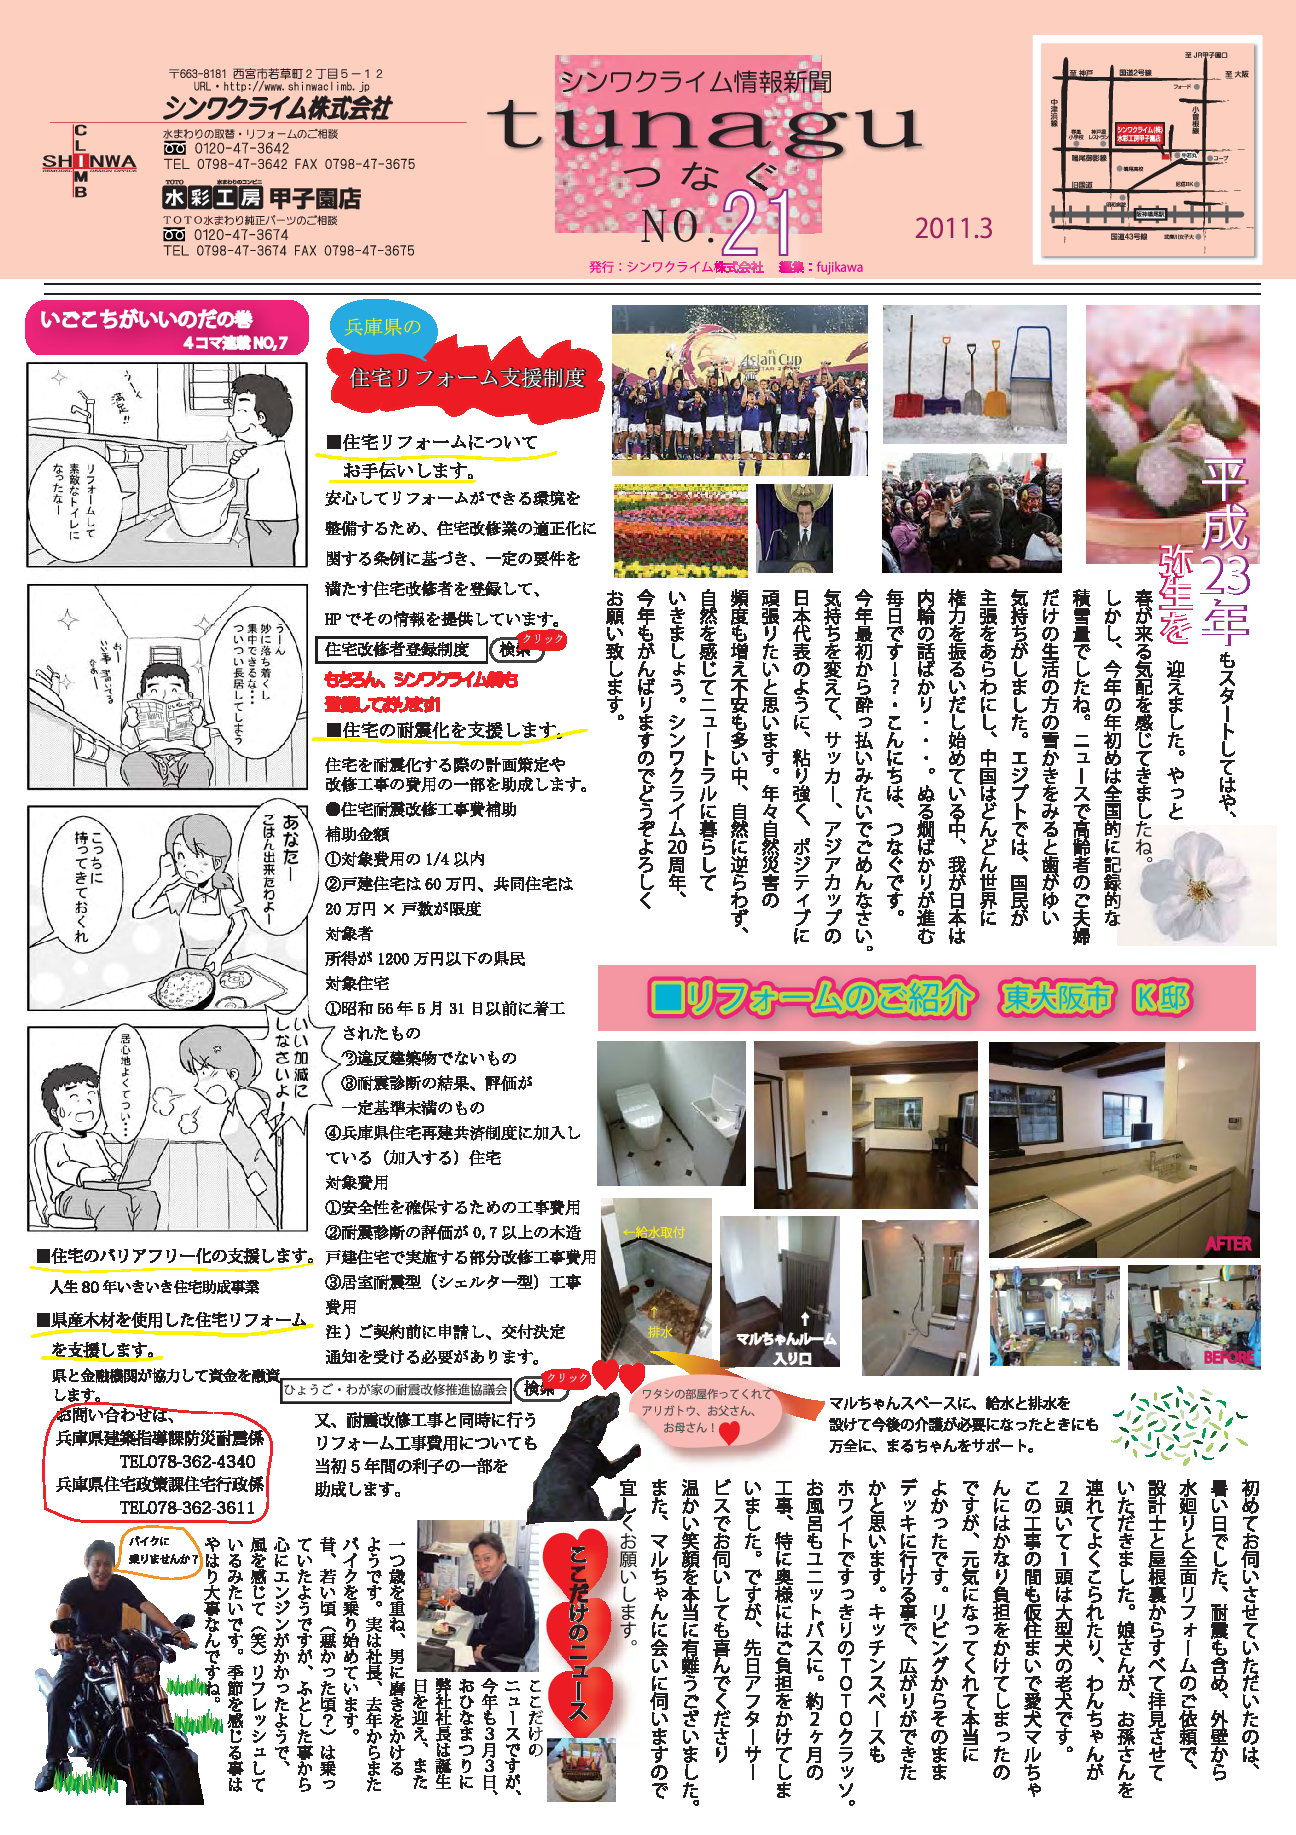 シンワクライム情報新聞2011.3月号